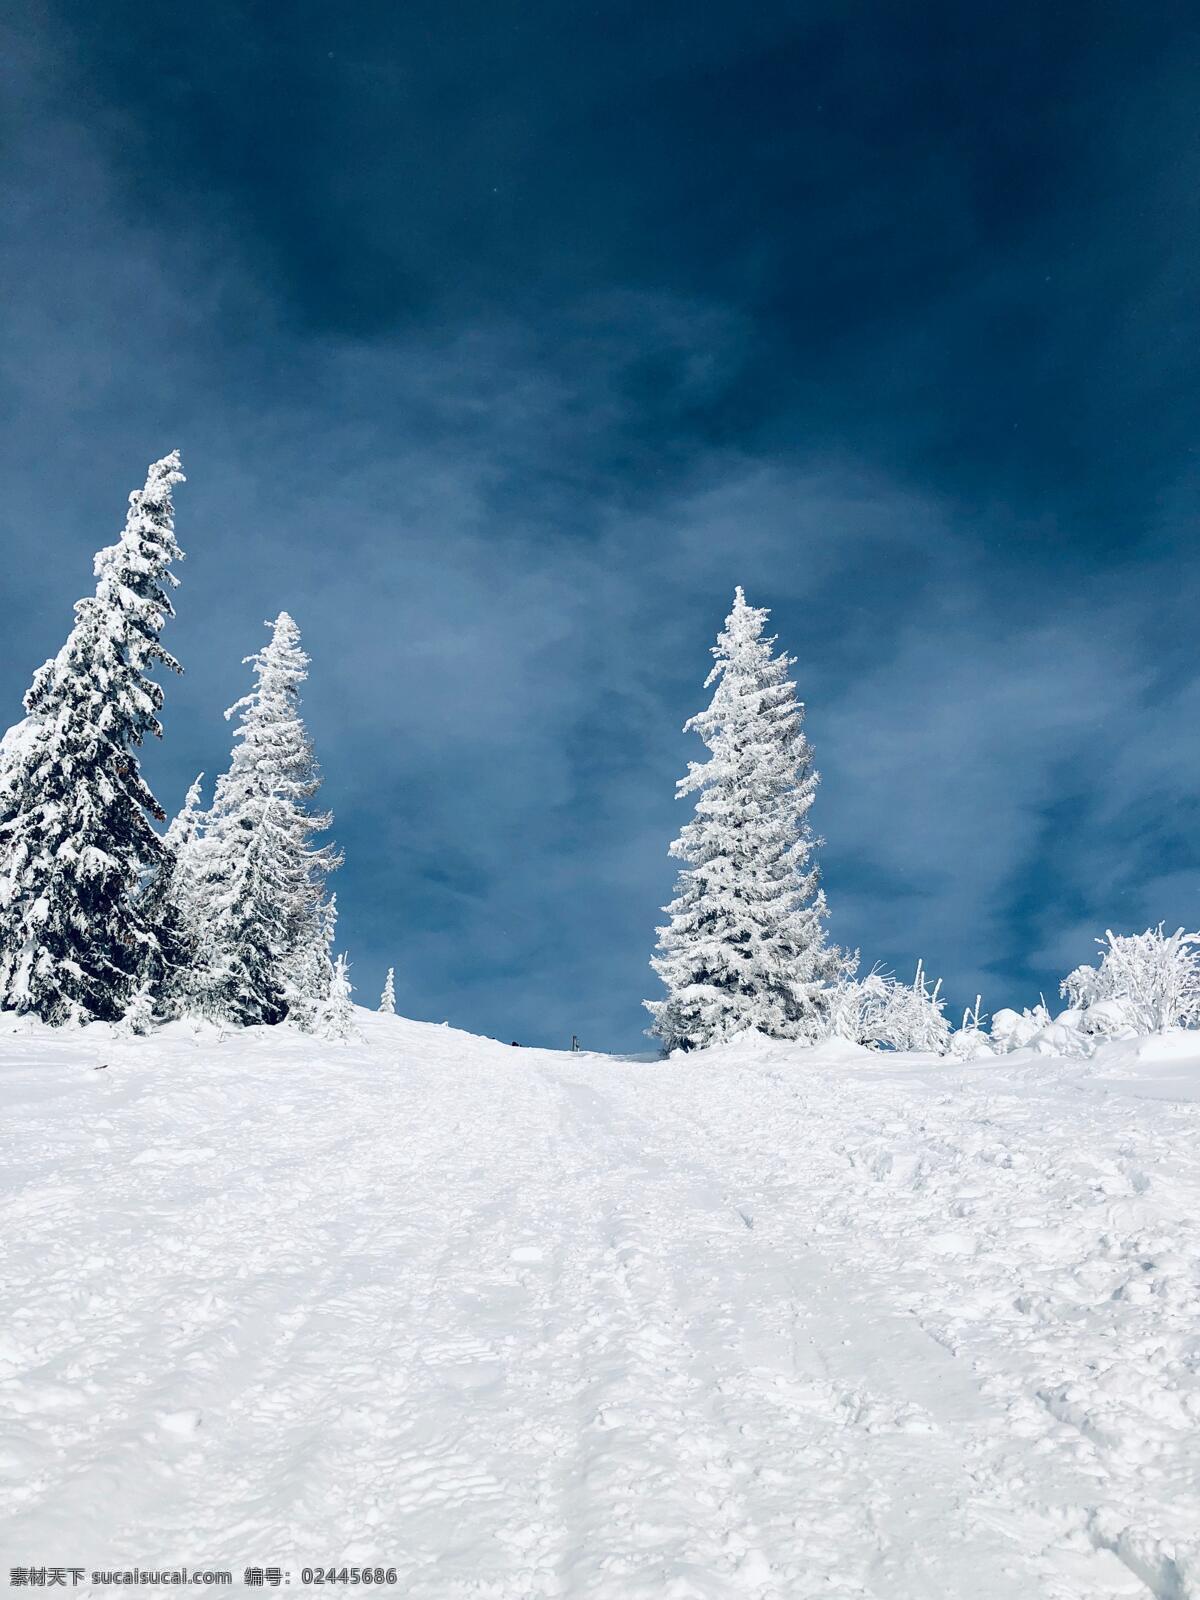 雪地松柏 大雪 雪地 松柏 滑雪 下雪 冬天 冬季 东北 寒冷 天空 蓝天 雪 风景 旅行 旅拍 自然景观 山水风景